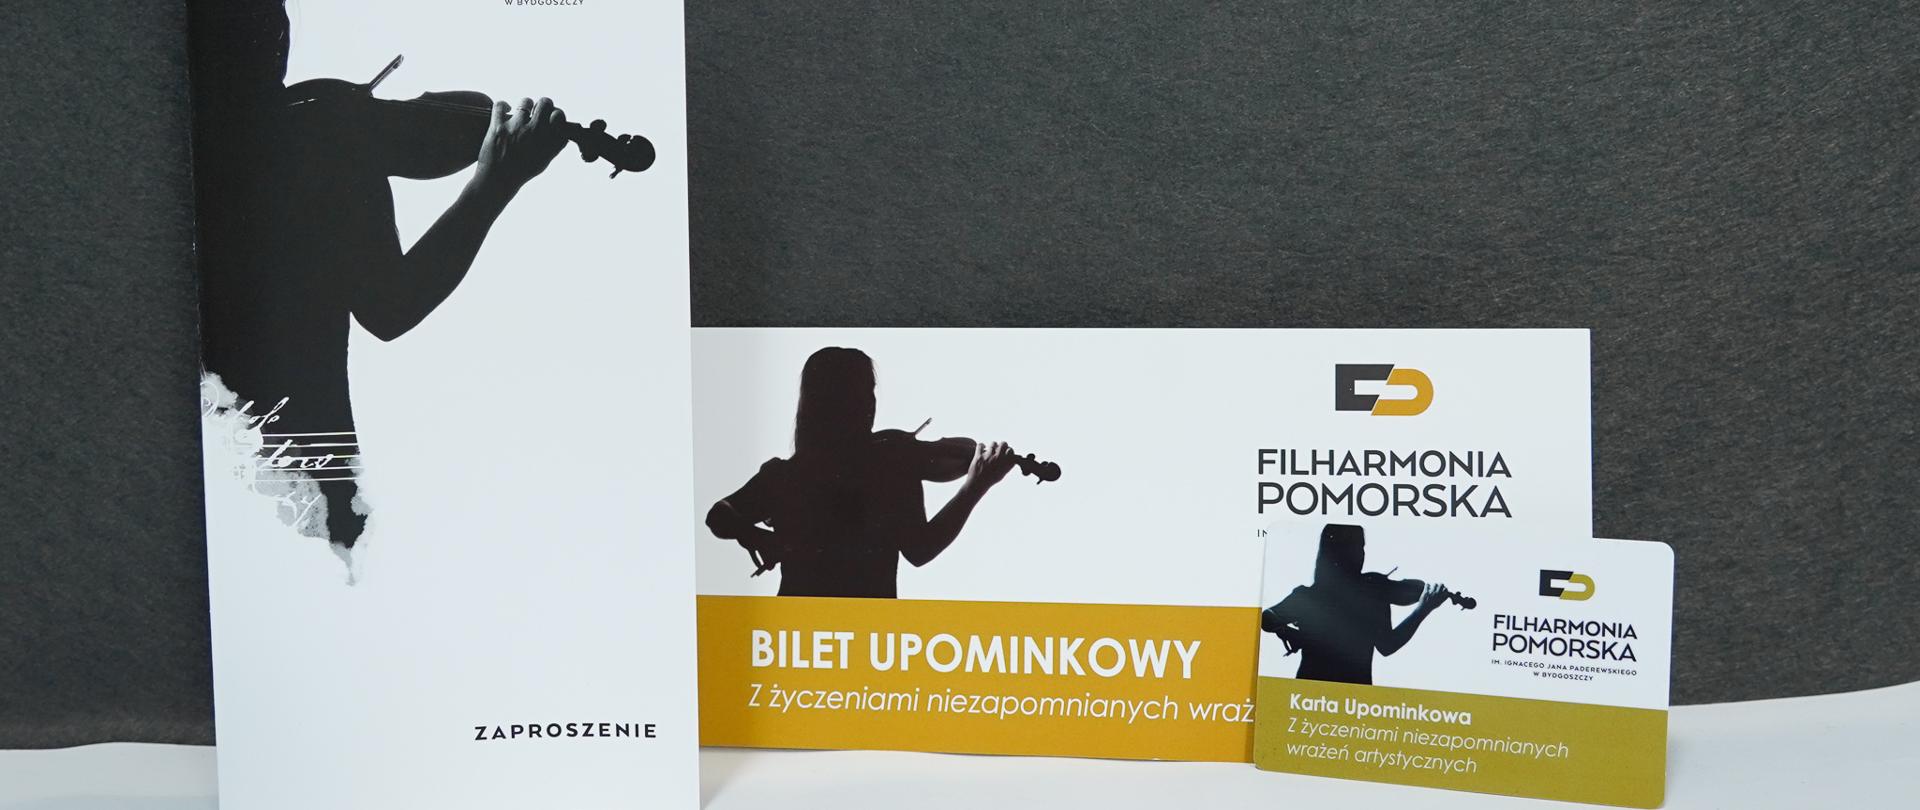 Karta upominkowa Filharmonii Pomorskiej im. I.J. Paderewskiego w Bydgoszczy